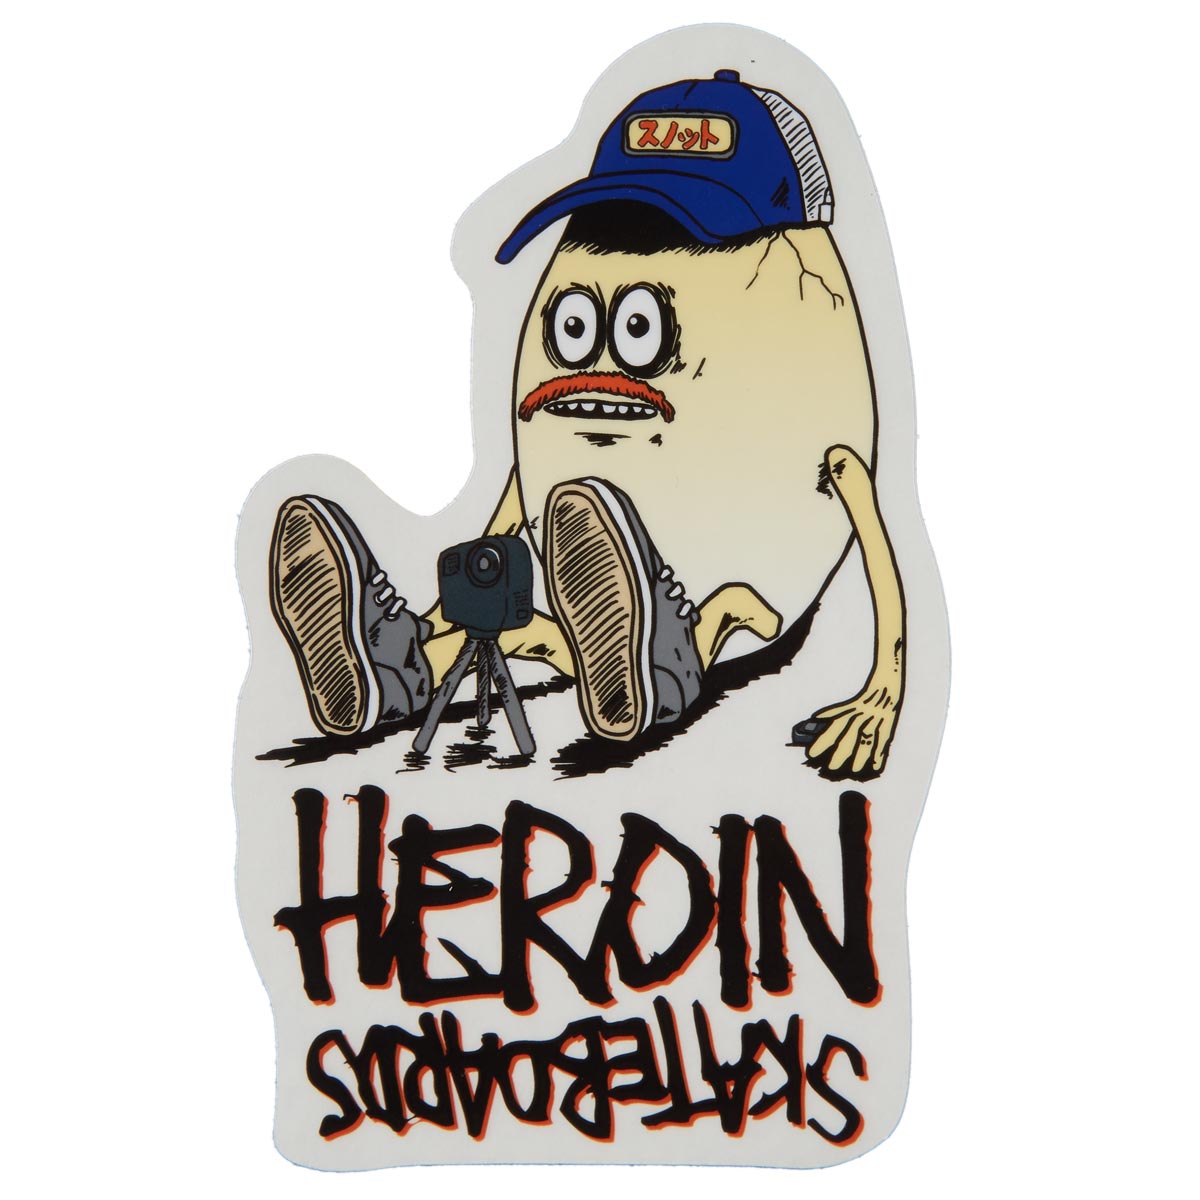 Heroin Eggzilla Sticker - Bail Gun Gary 4 image 1